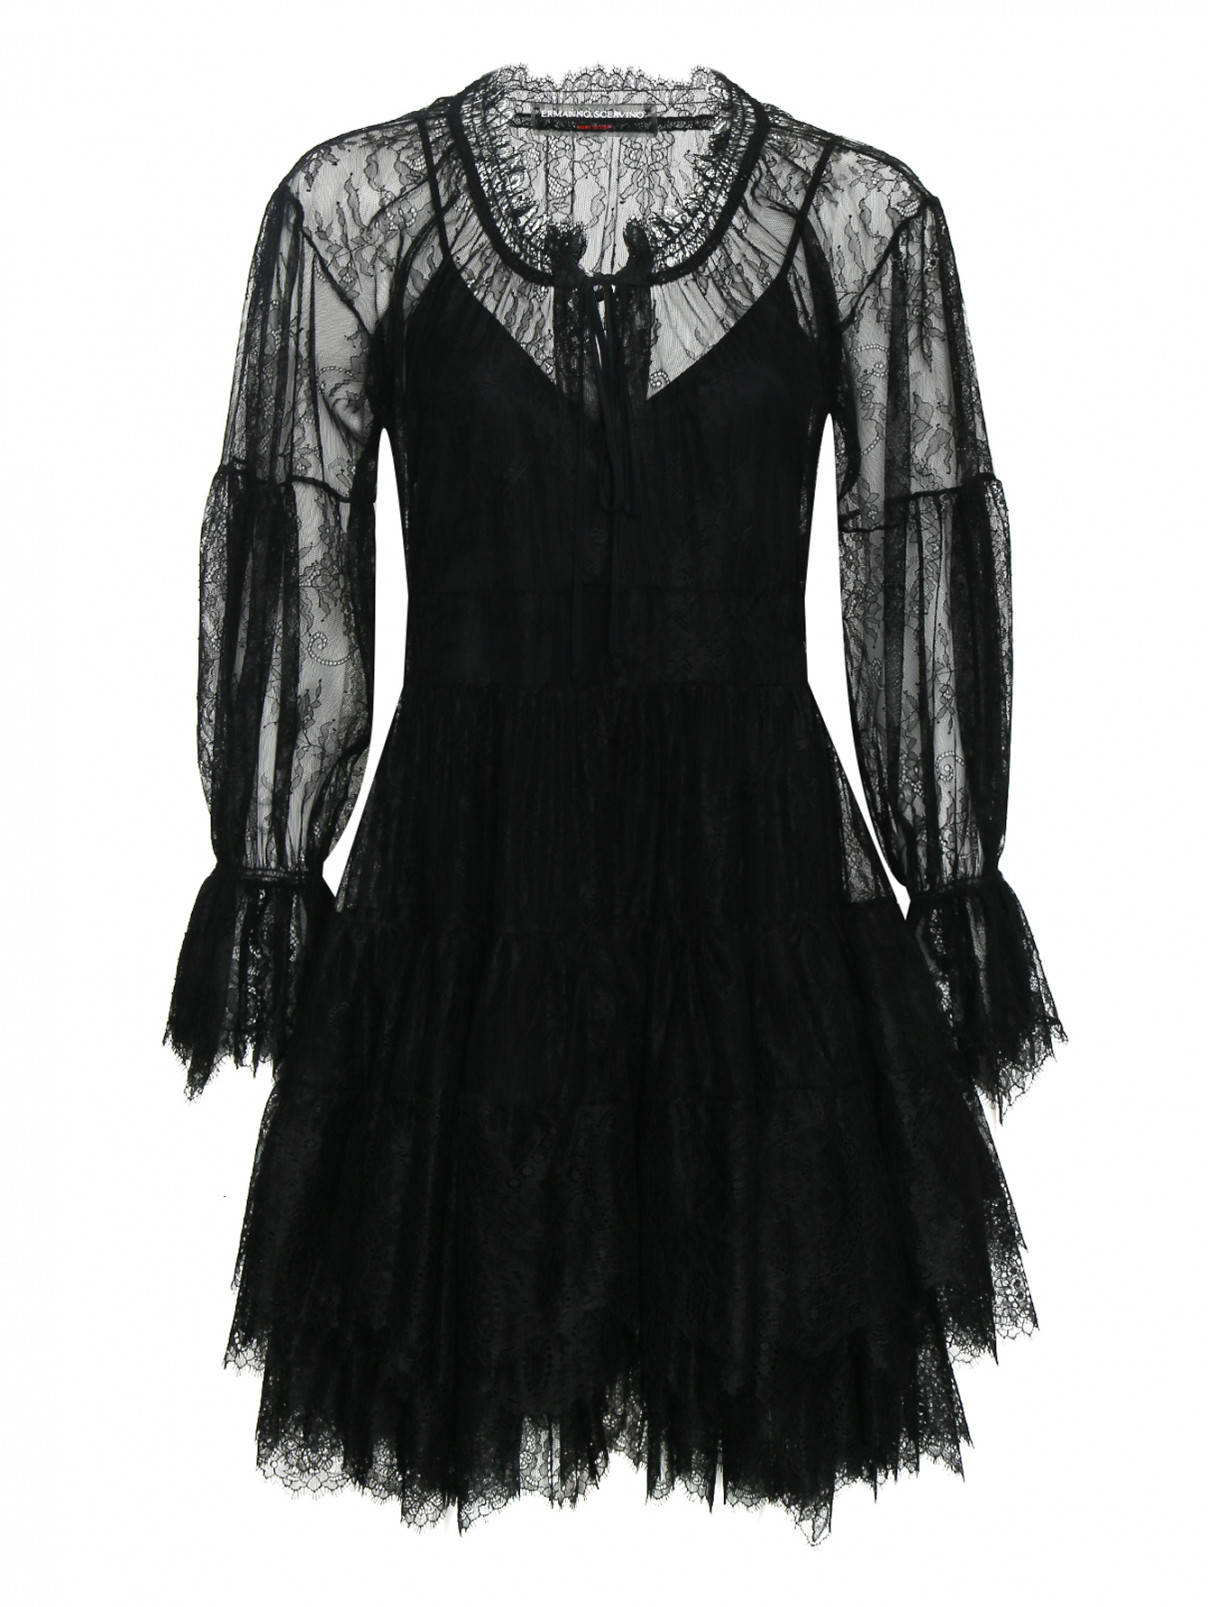 Полупрозрачное платье с кружевным узором Ermanno Scervino  –  Общий вид  – Цвет:  Черный